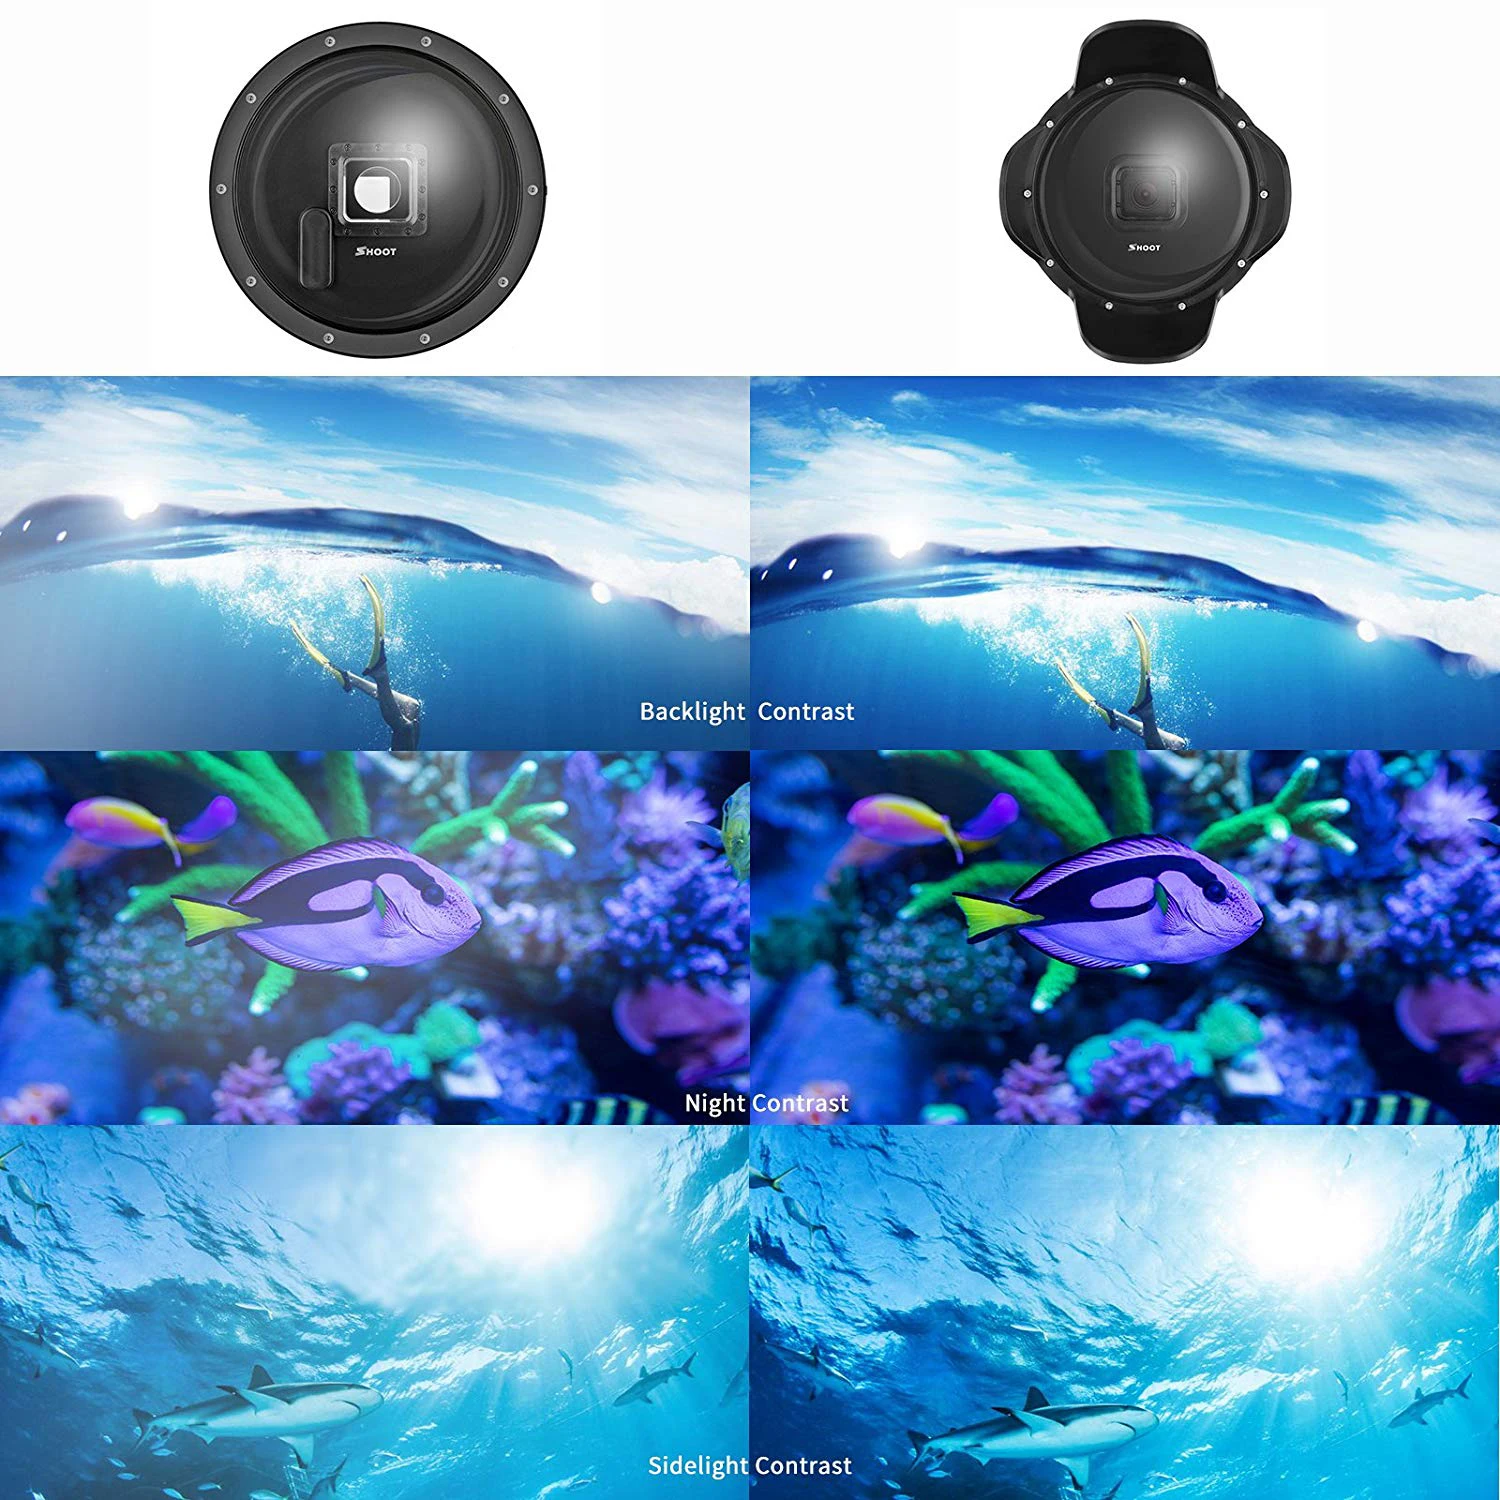 Съёмка подводный купол порт для GoPro HERO6 HERO5 HERO2018(купол порт+ Водонепроницаемый чехол+ ручка